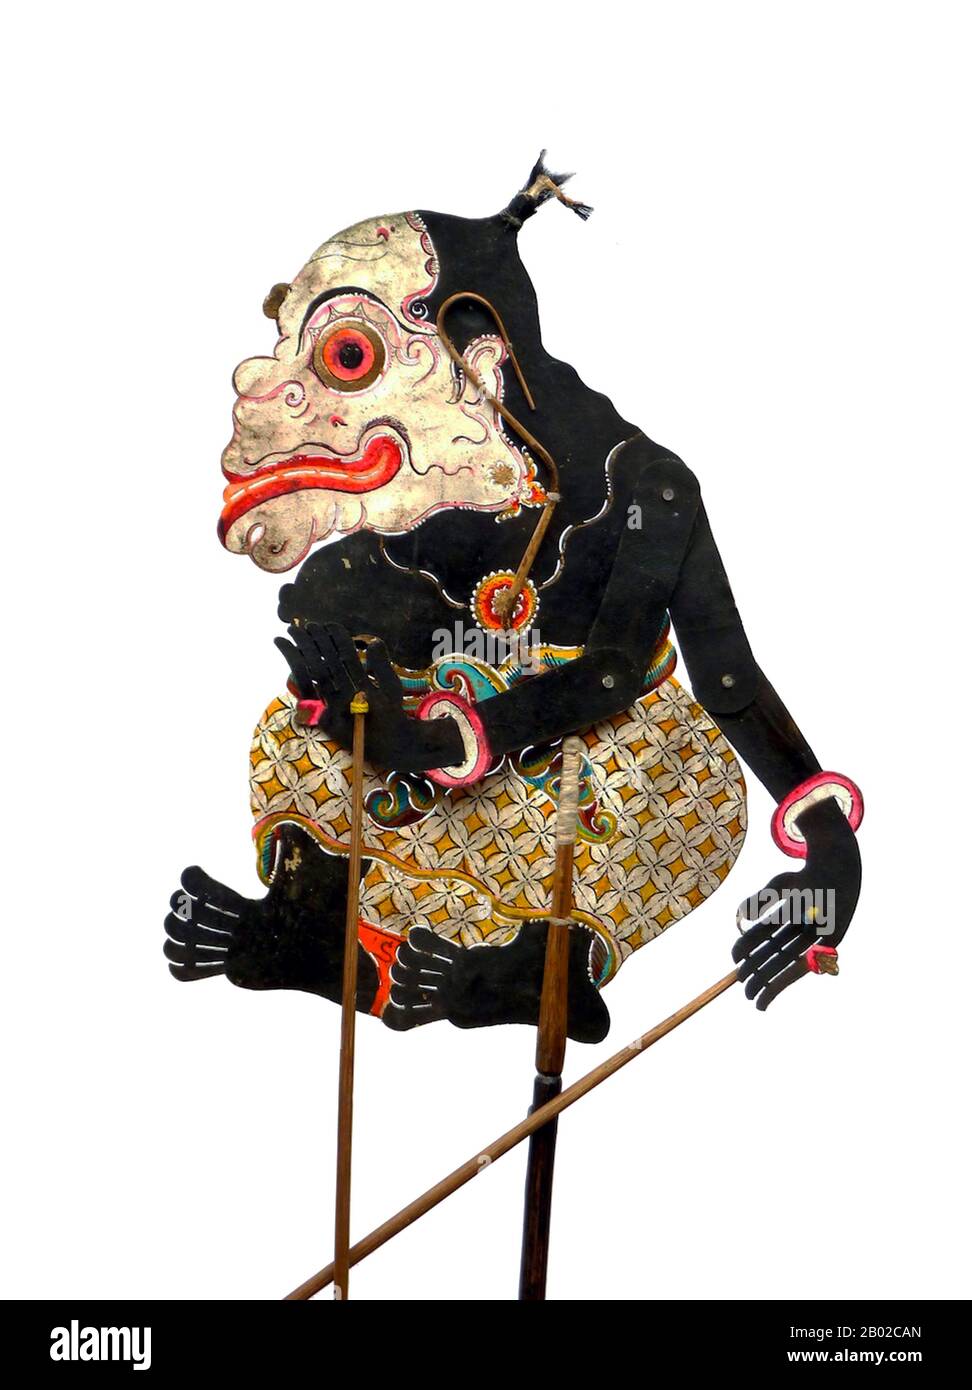 Dans le wayang javanais (marionnettes d'ombre), le panakawan ou le panakavan (phanakavhan) sont les serviteurs de clown du héros. Il y en a quatre – Semar (également connu sous le nom de Ki Lurah Semar), Petruk, Gareng et Bagong. Semar est la personnification d'une divinité, parfois dit à être le dhanyang ou l'esprit gardien de l'île de Java. Dans la mythologie javanaise, les déités ne peuvent se manifester que comme des êtres humains laides ou non prépossédant, et Semar est toujours dépeint comme étant court et gras avec un nez pug et une hernie bancale. Ses trois compagnons sont ses fils adoptés, donnés à Semar comme votaires par leur p Banque D'Images